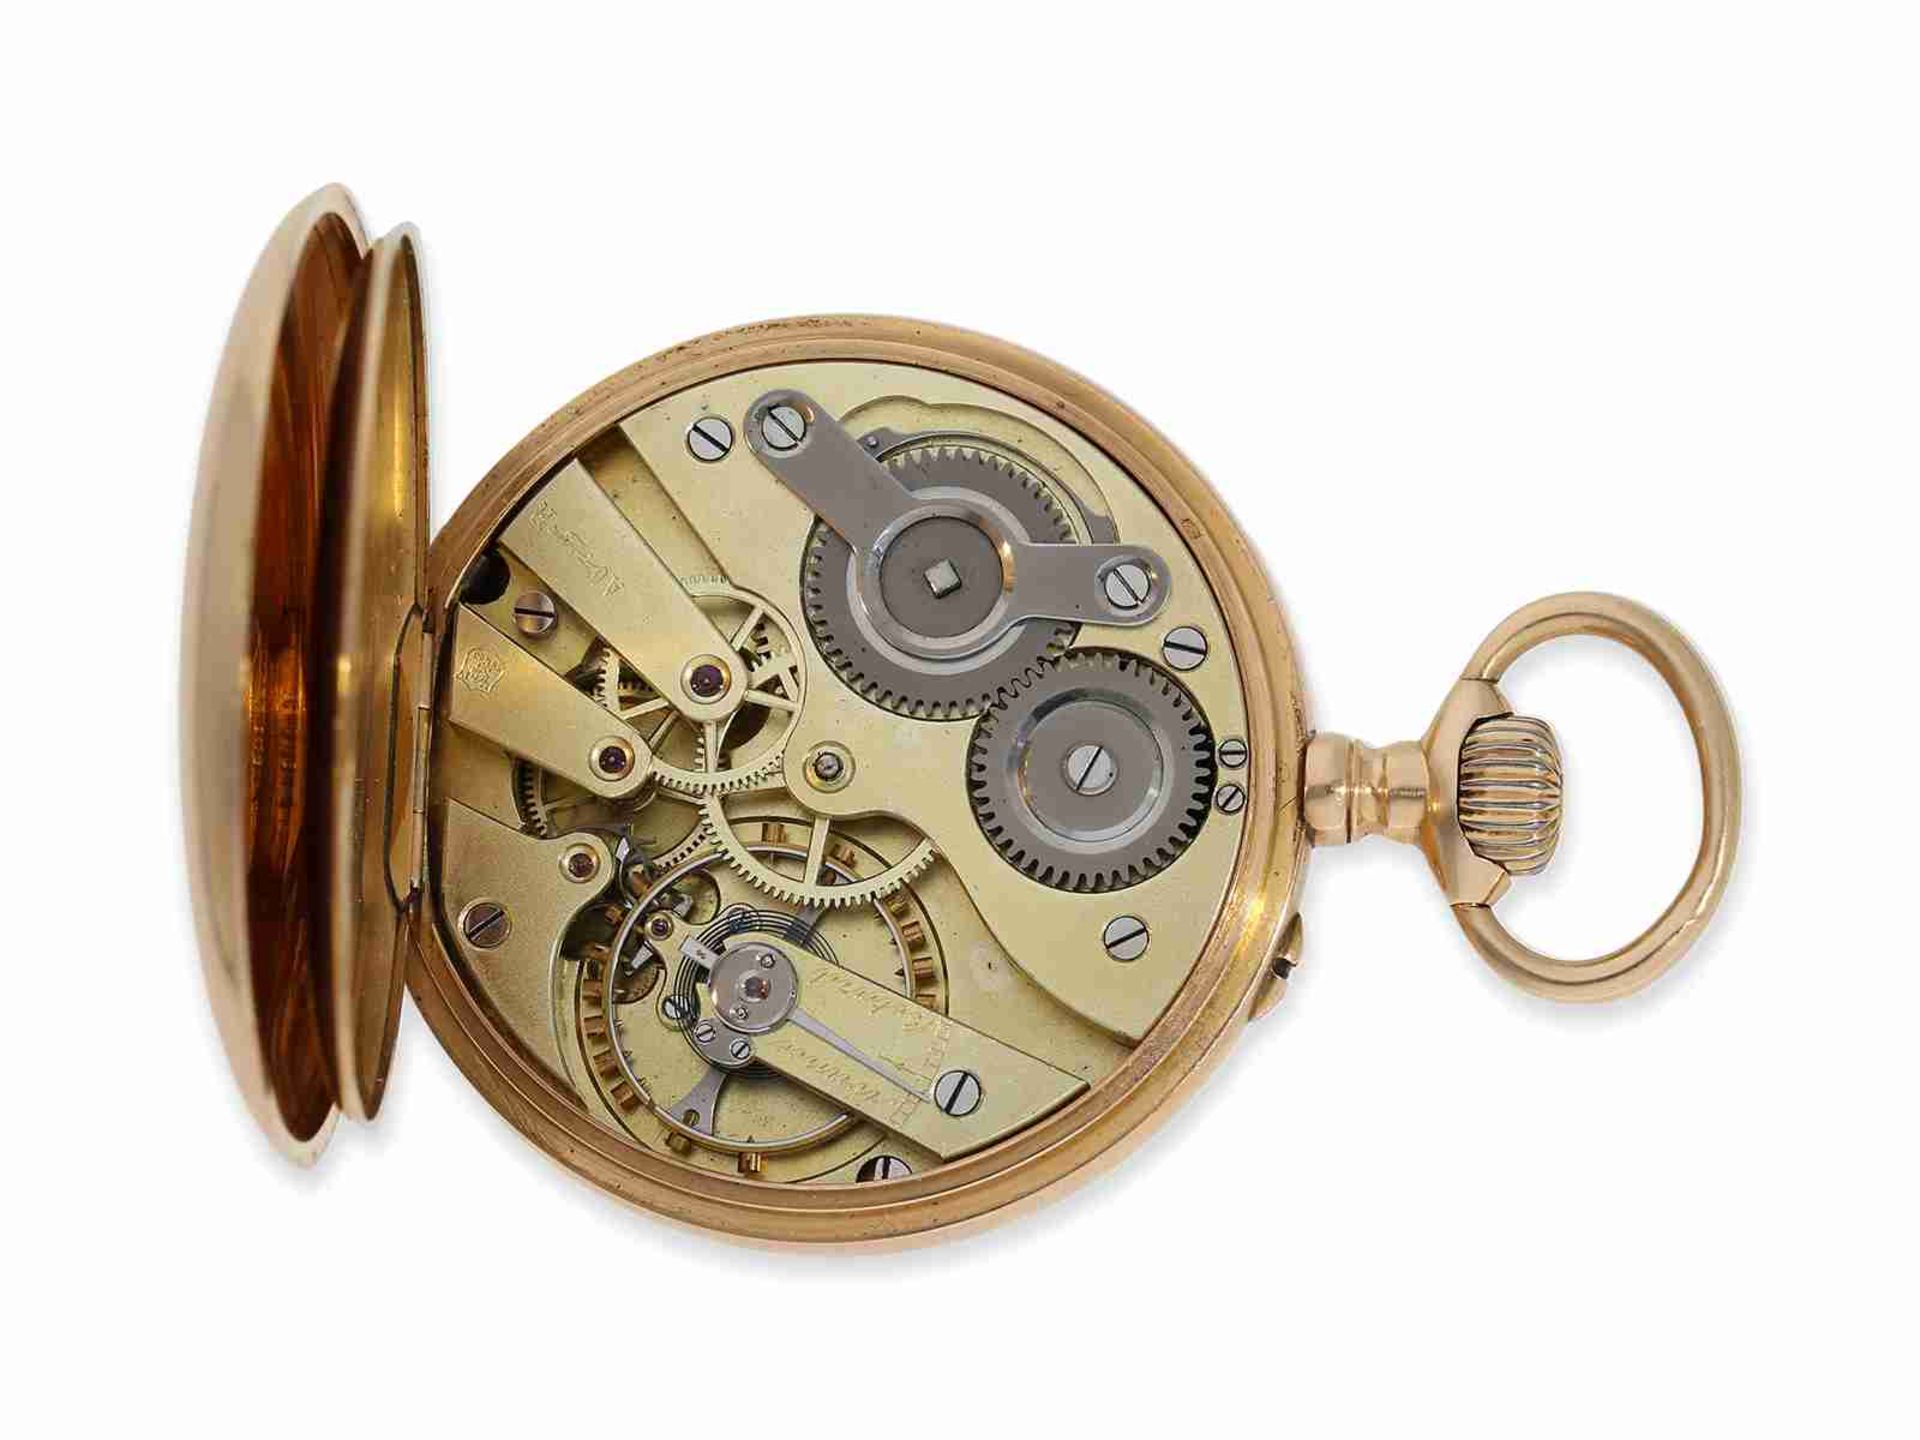 Taschenuhr: hochfeines rotgoldenes Ankerchronometer von Mermod Freres, verkauft durch Türler in Züri - Bild 2 aus 7